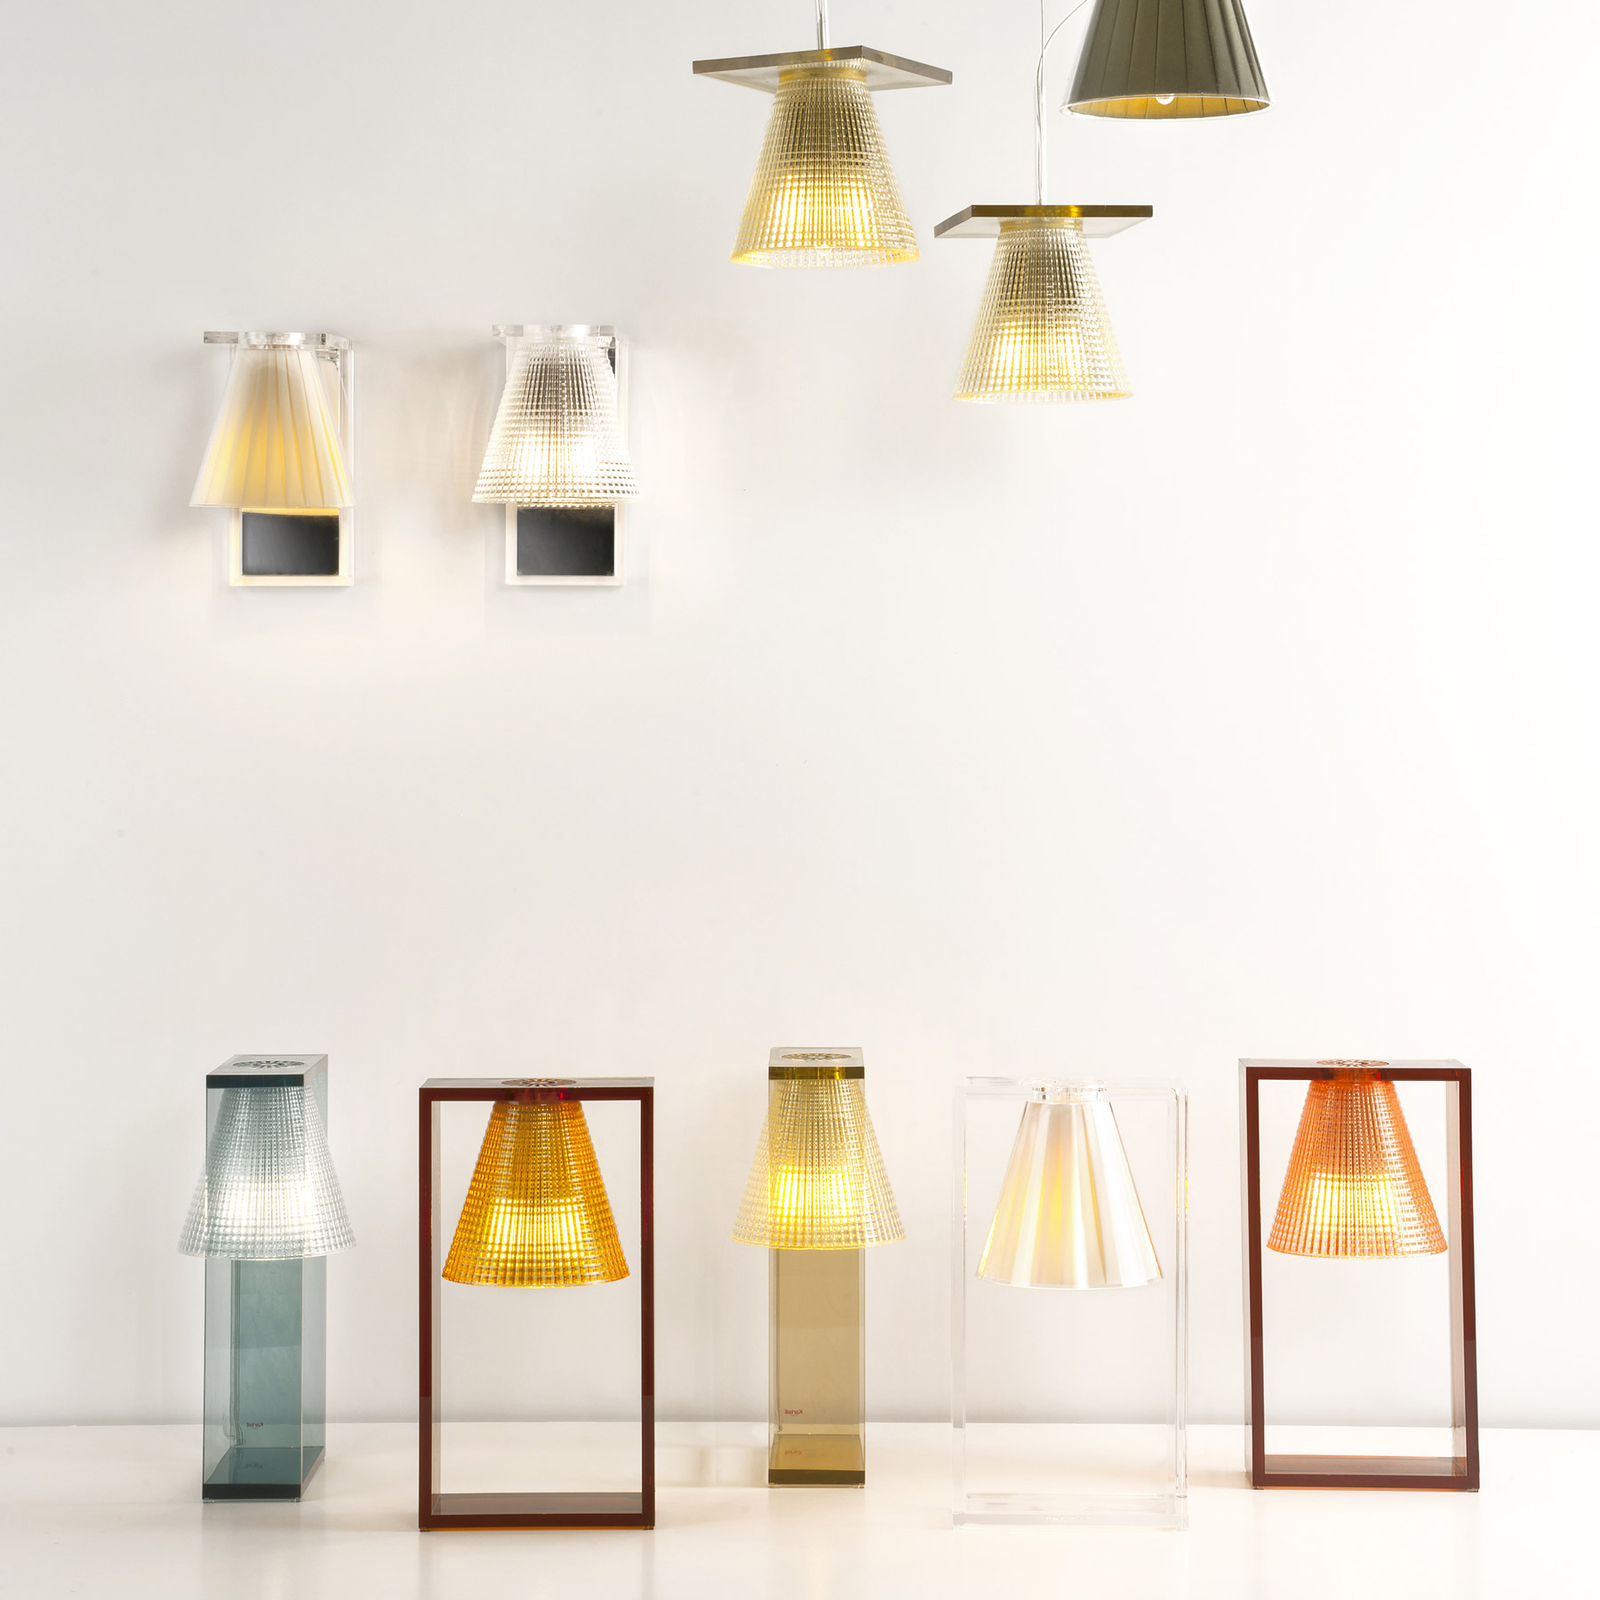 Kartell Light-Air LED-væglampe, transparent